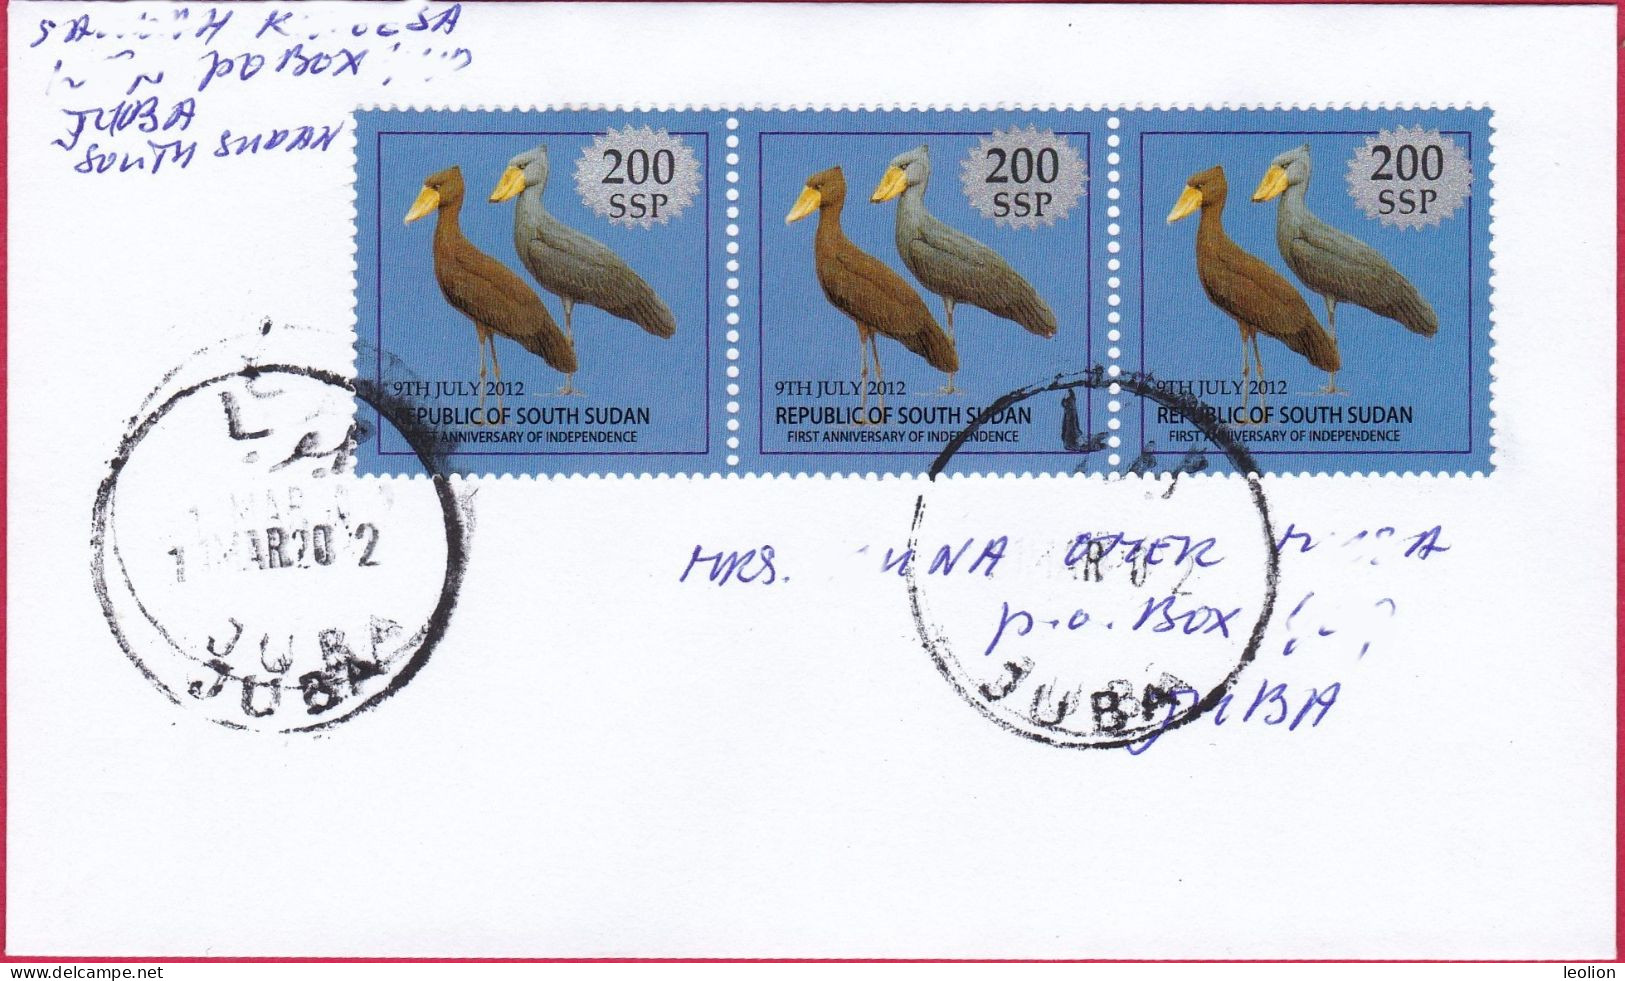 SOUTH SUDAN 2022 Cover With 3x 200 SSP Overprint On 1 SSP Birds Süd-Sudan 1 SSP Shoe-Billed Stork Oiseaux SOUDAN - Sudán Del Sur